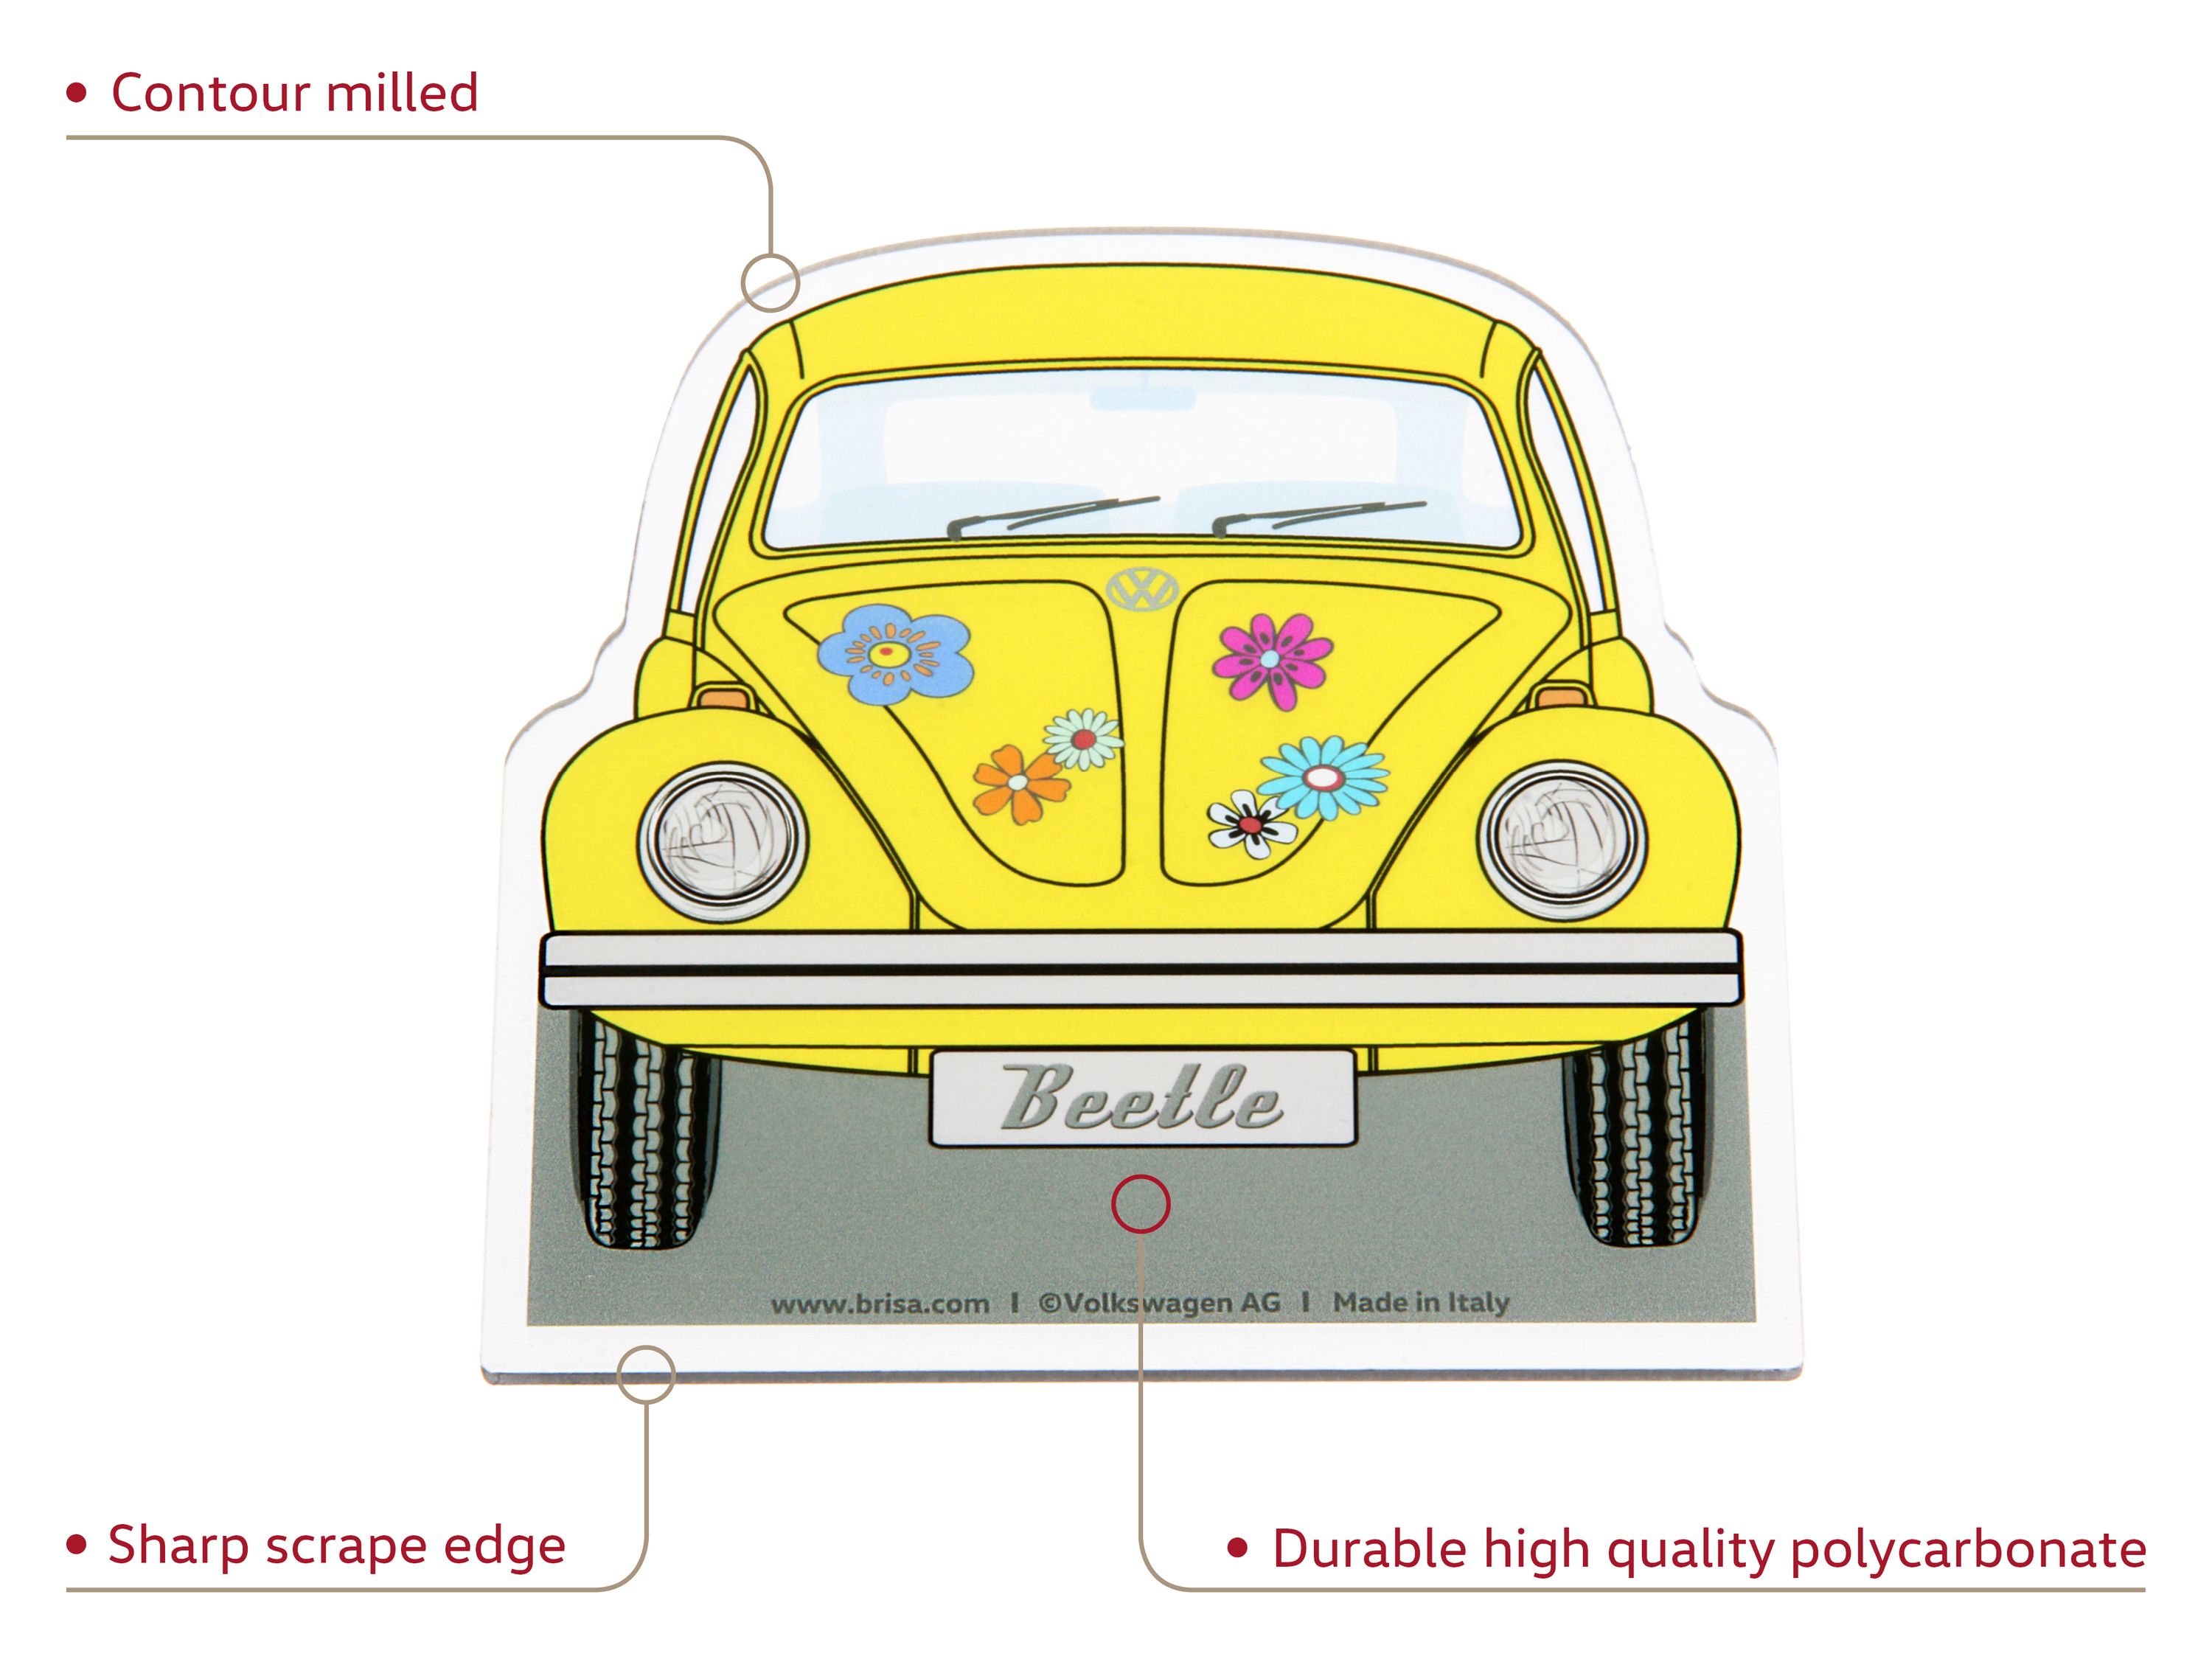 Raschiaghiaccio VW Beetle - giallo